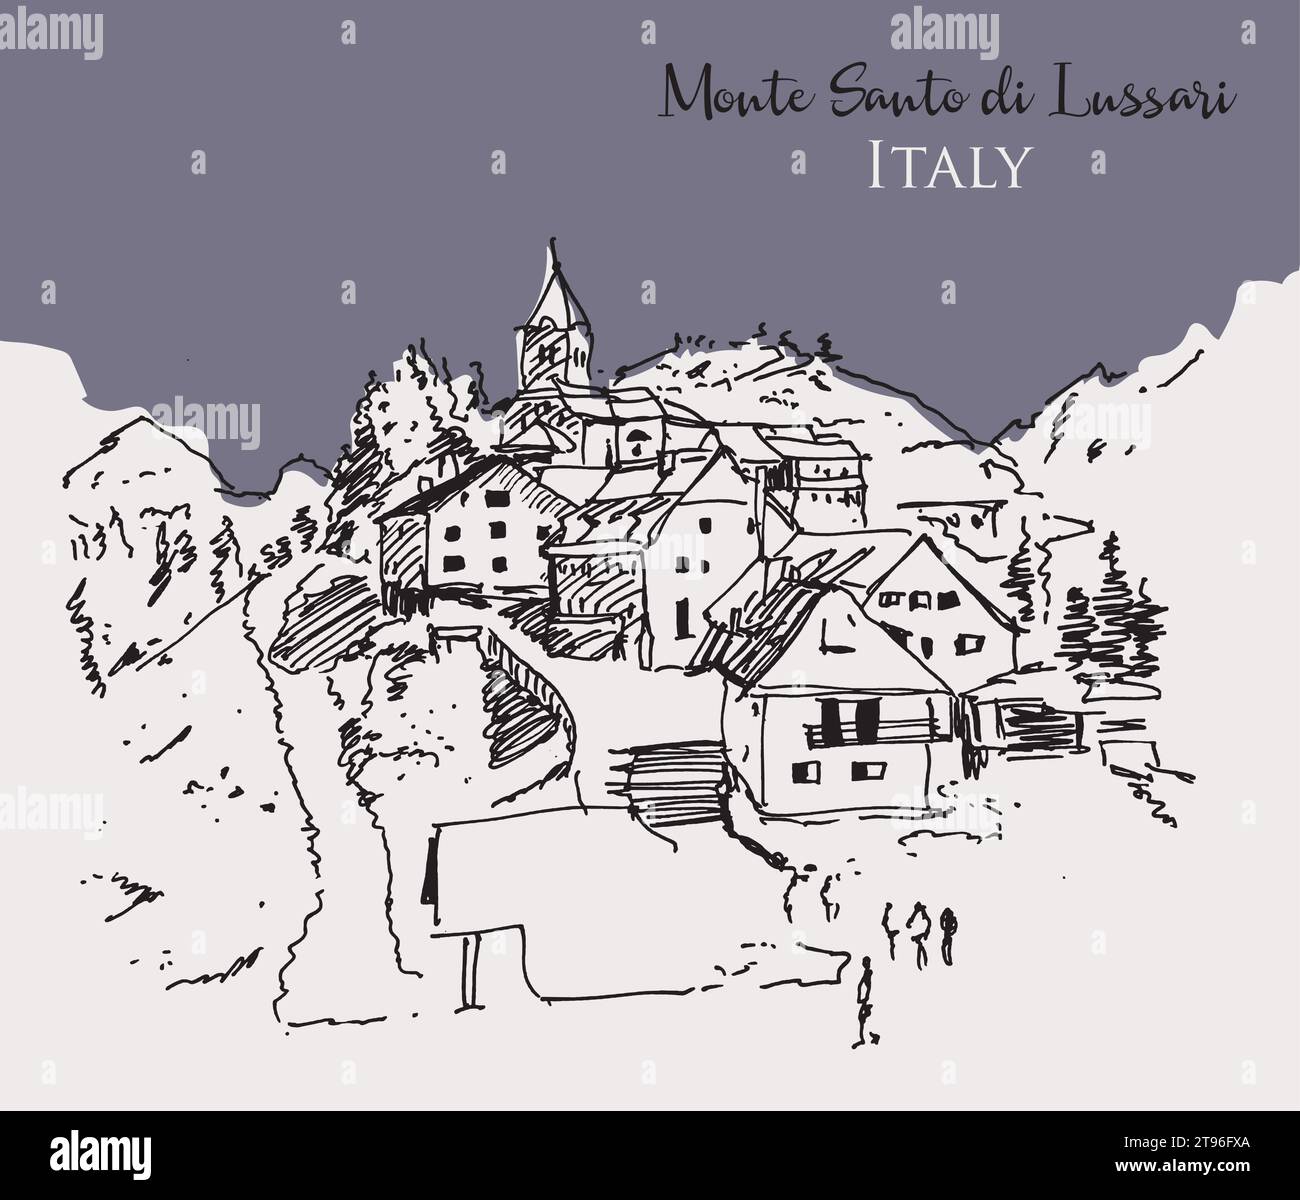 Illustration vectorielle dessinée à la main du Monte Santo di Lussari, une petite station de ski dans le nord de l'Italie. Illustration de Vecteur